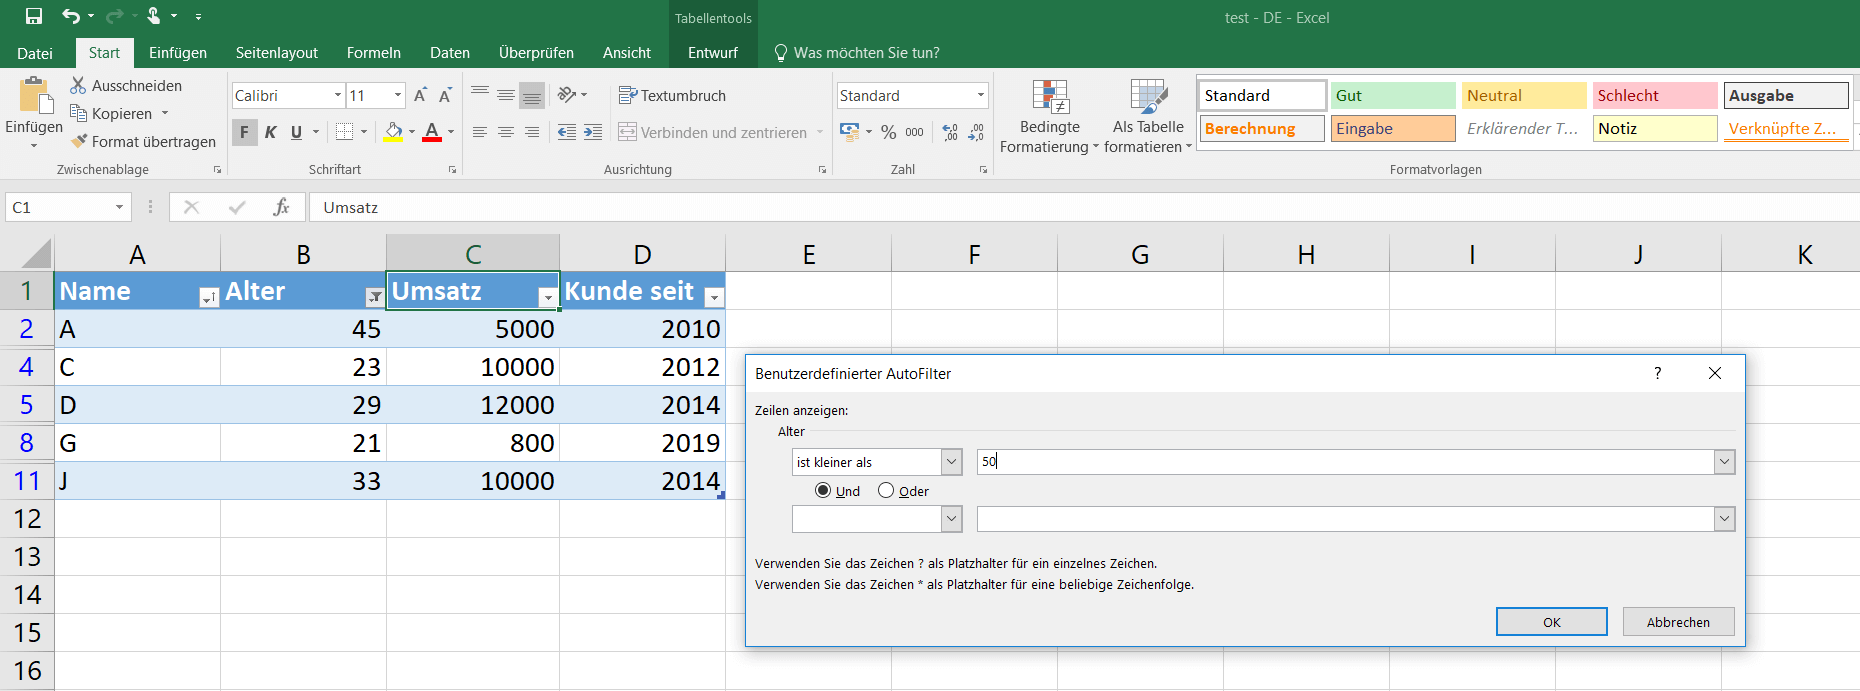 Excel-Tabelle mit benutzerdefinierter Filterung